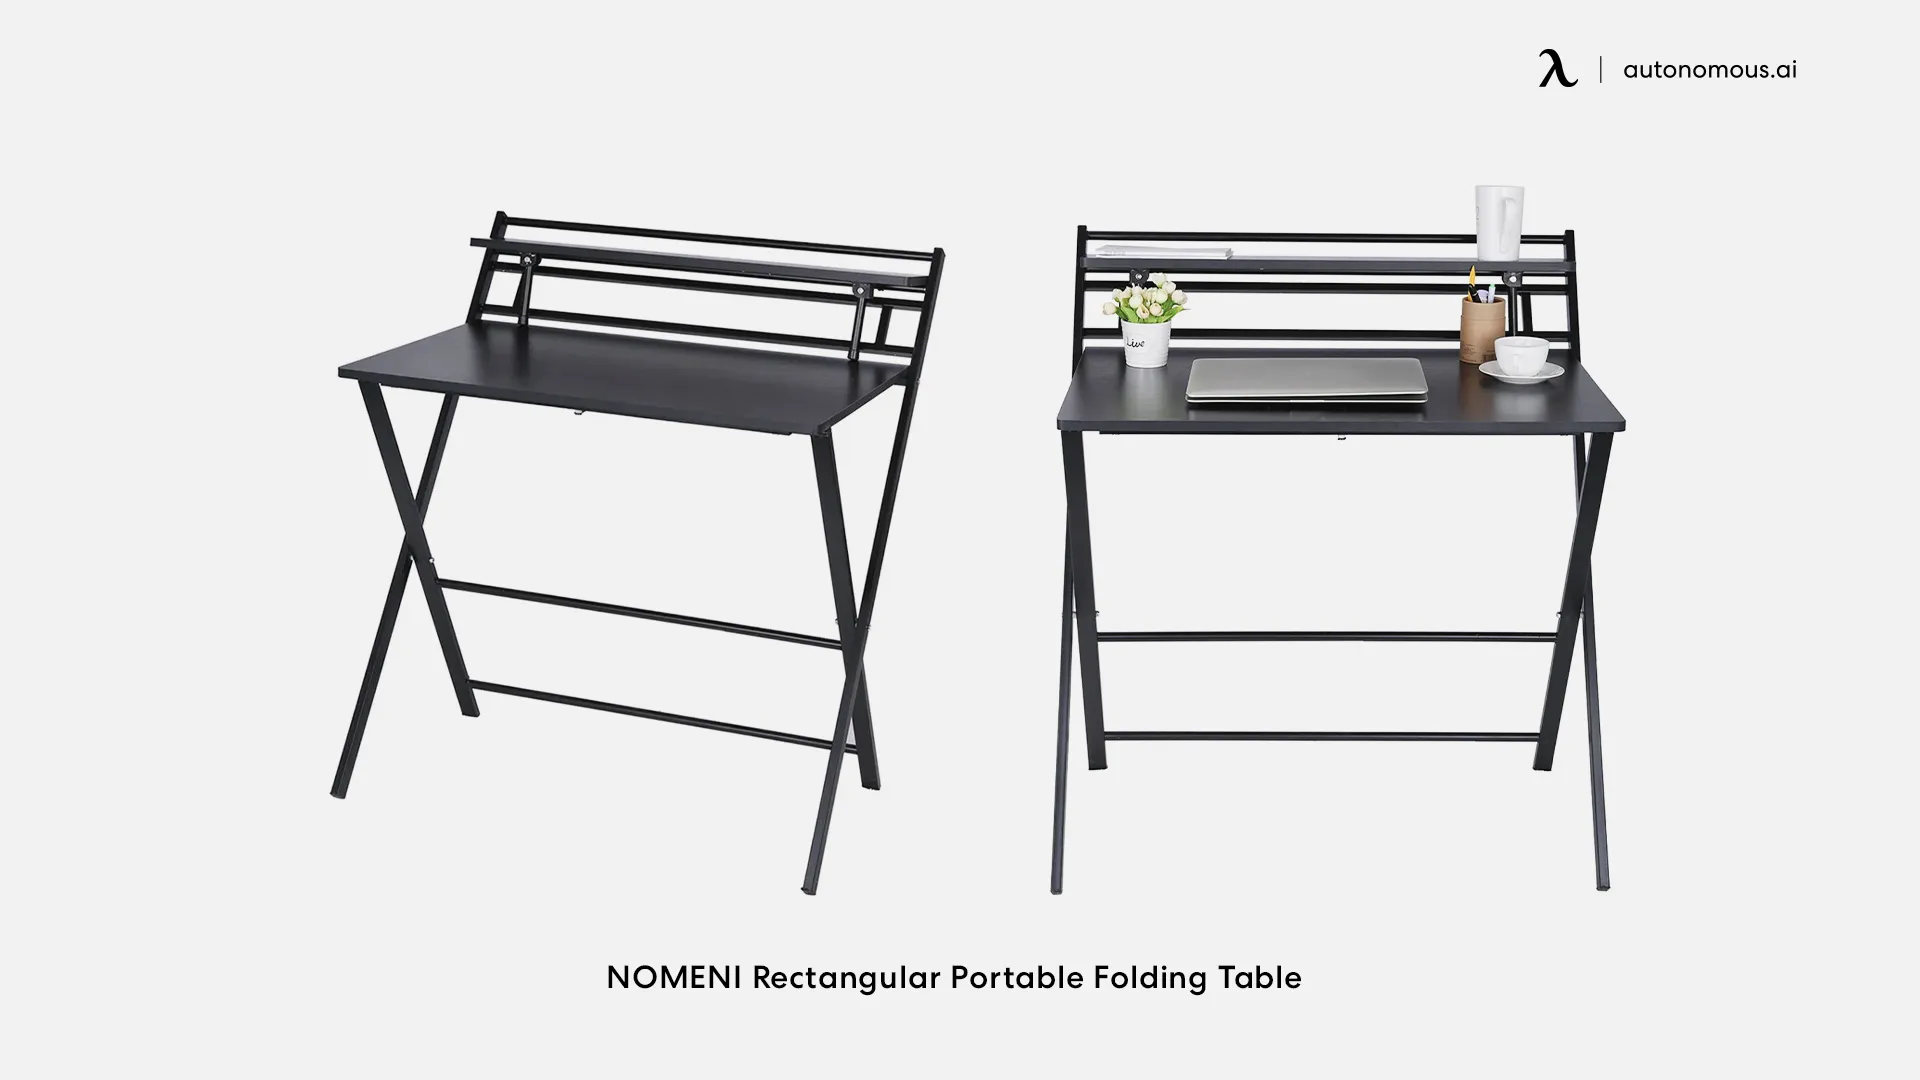 NOMENI Rectangular Portable Folding Table